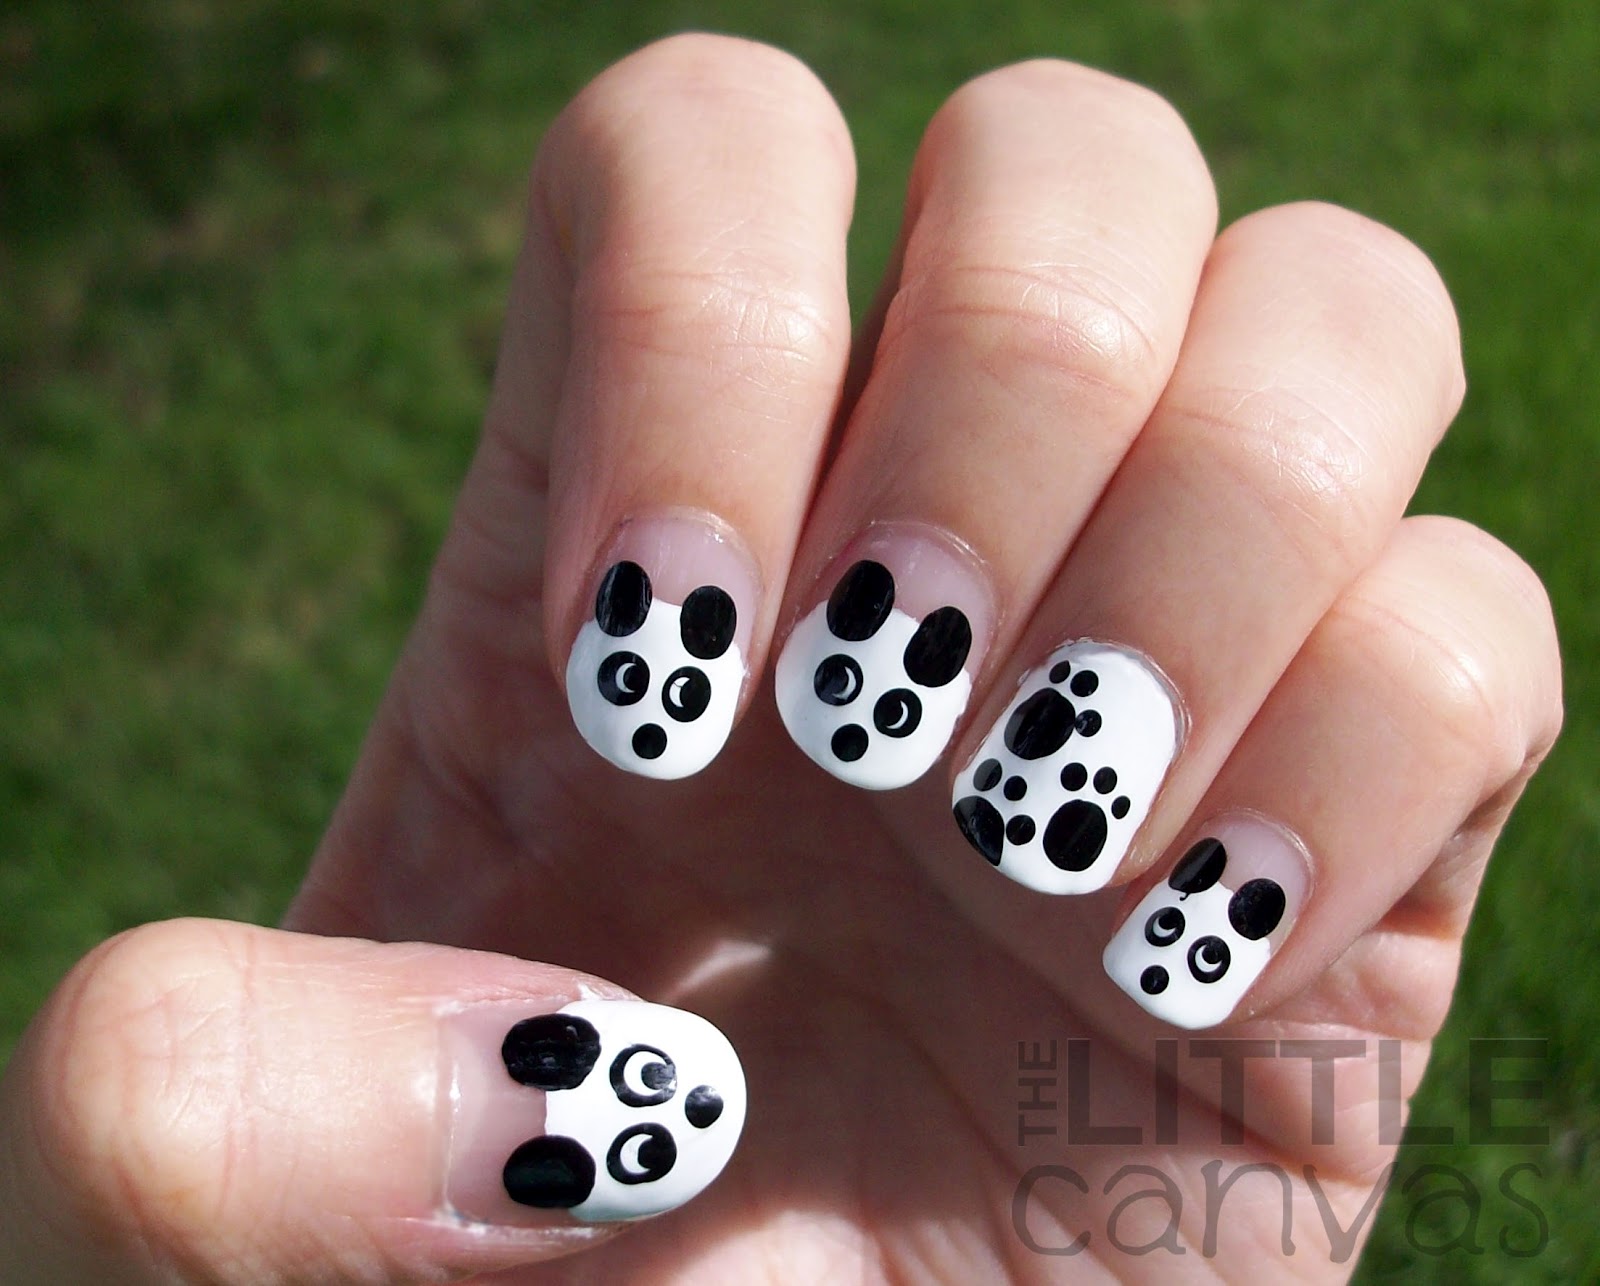 1. Cute Panda Acrylic Nail Design - wide 8